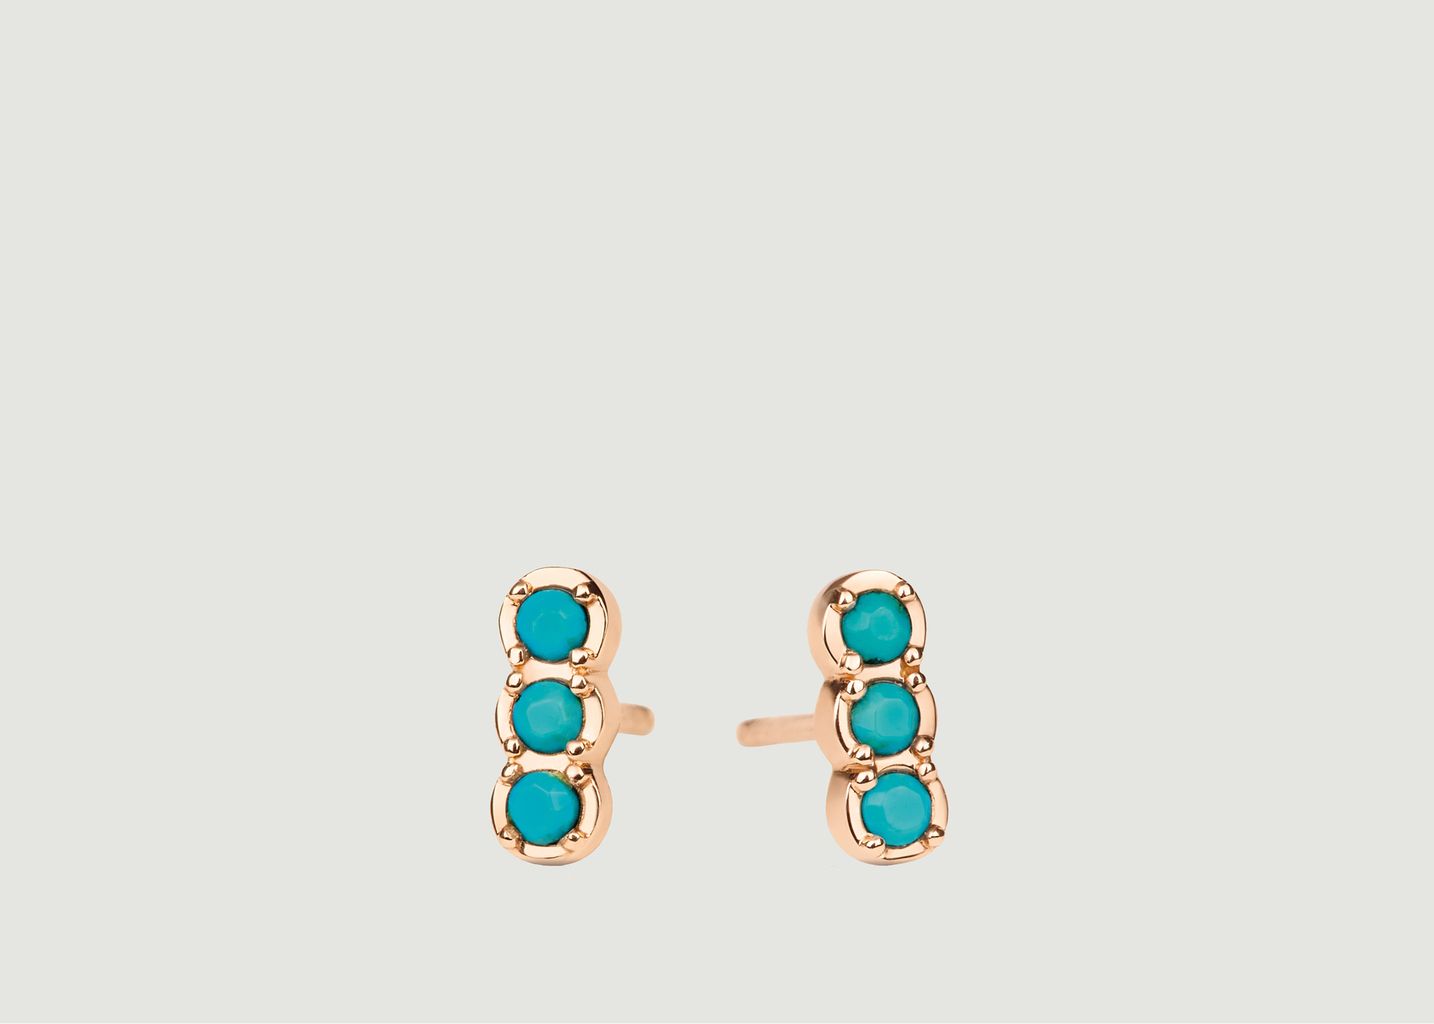 Fallen Strip Earrings - Ginette NY